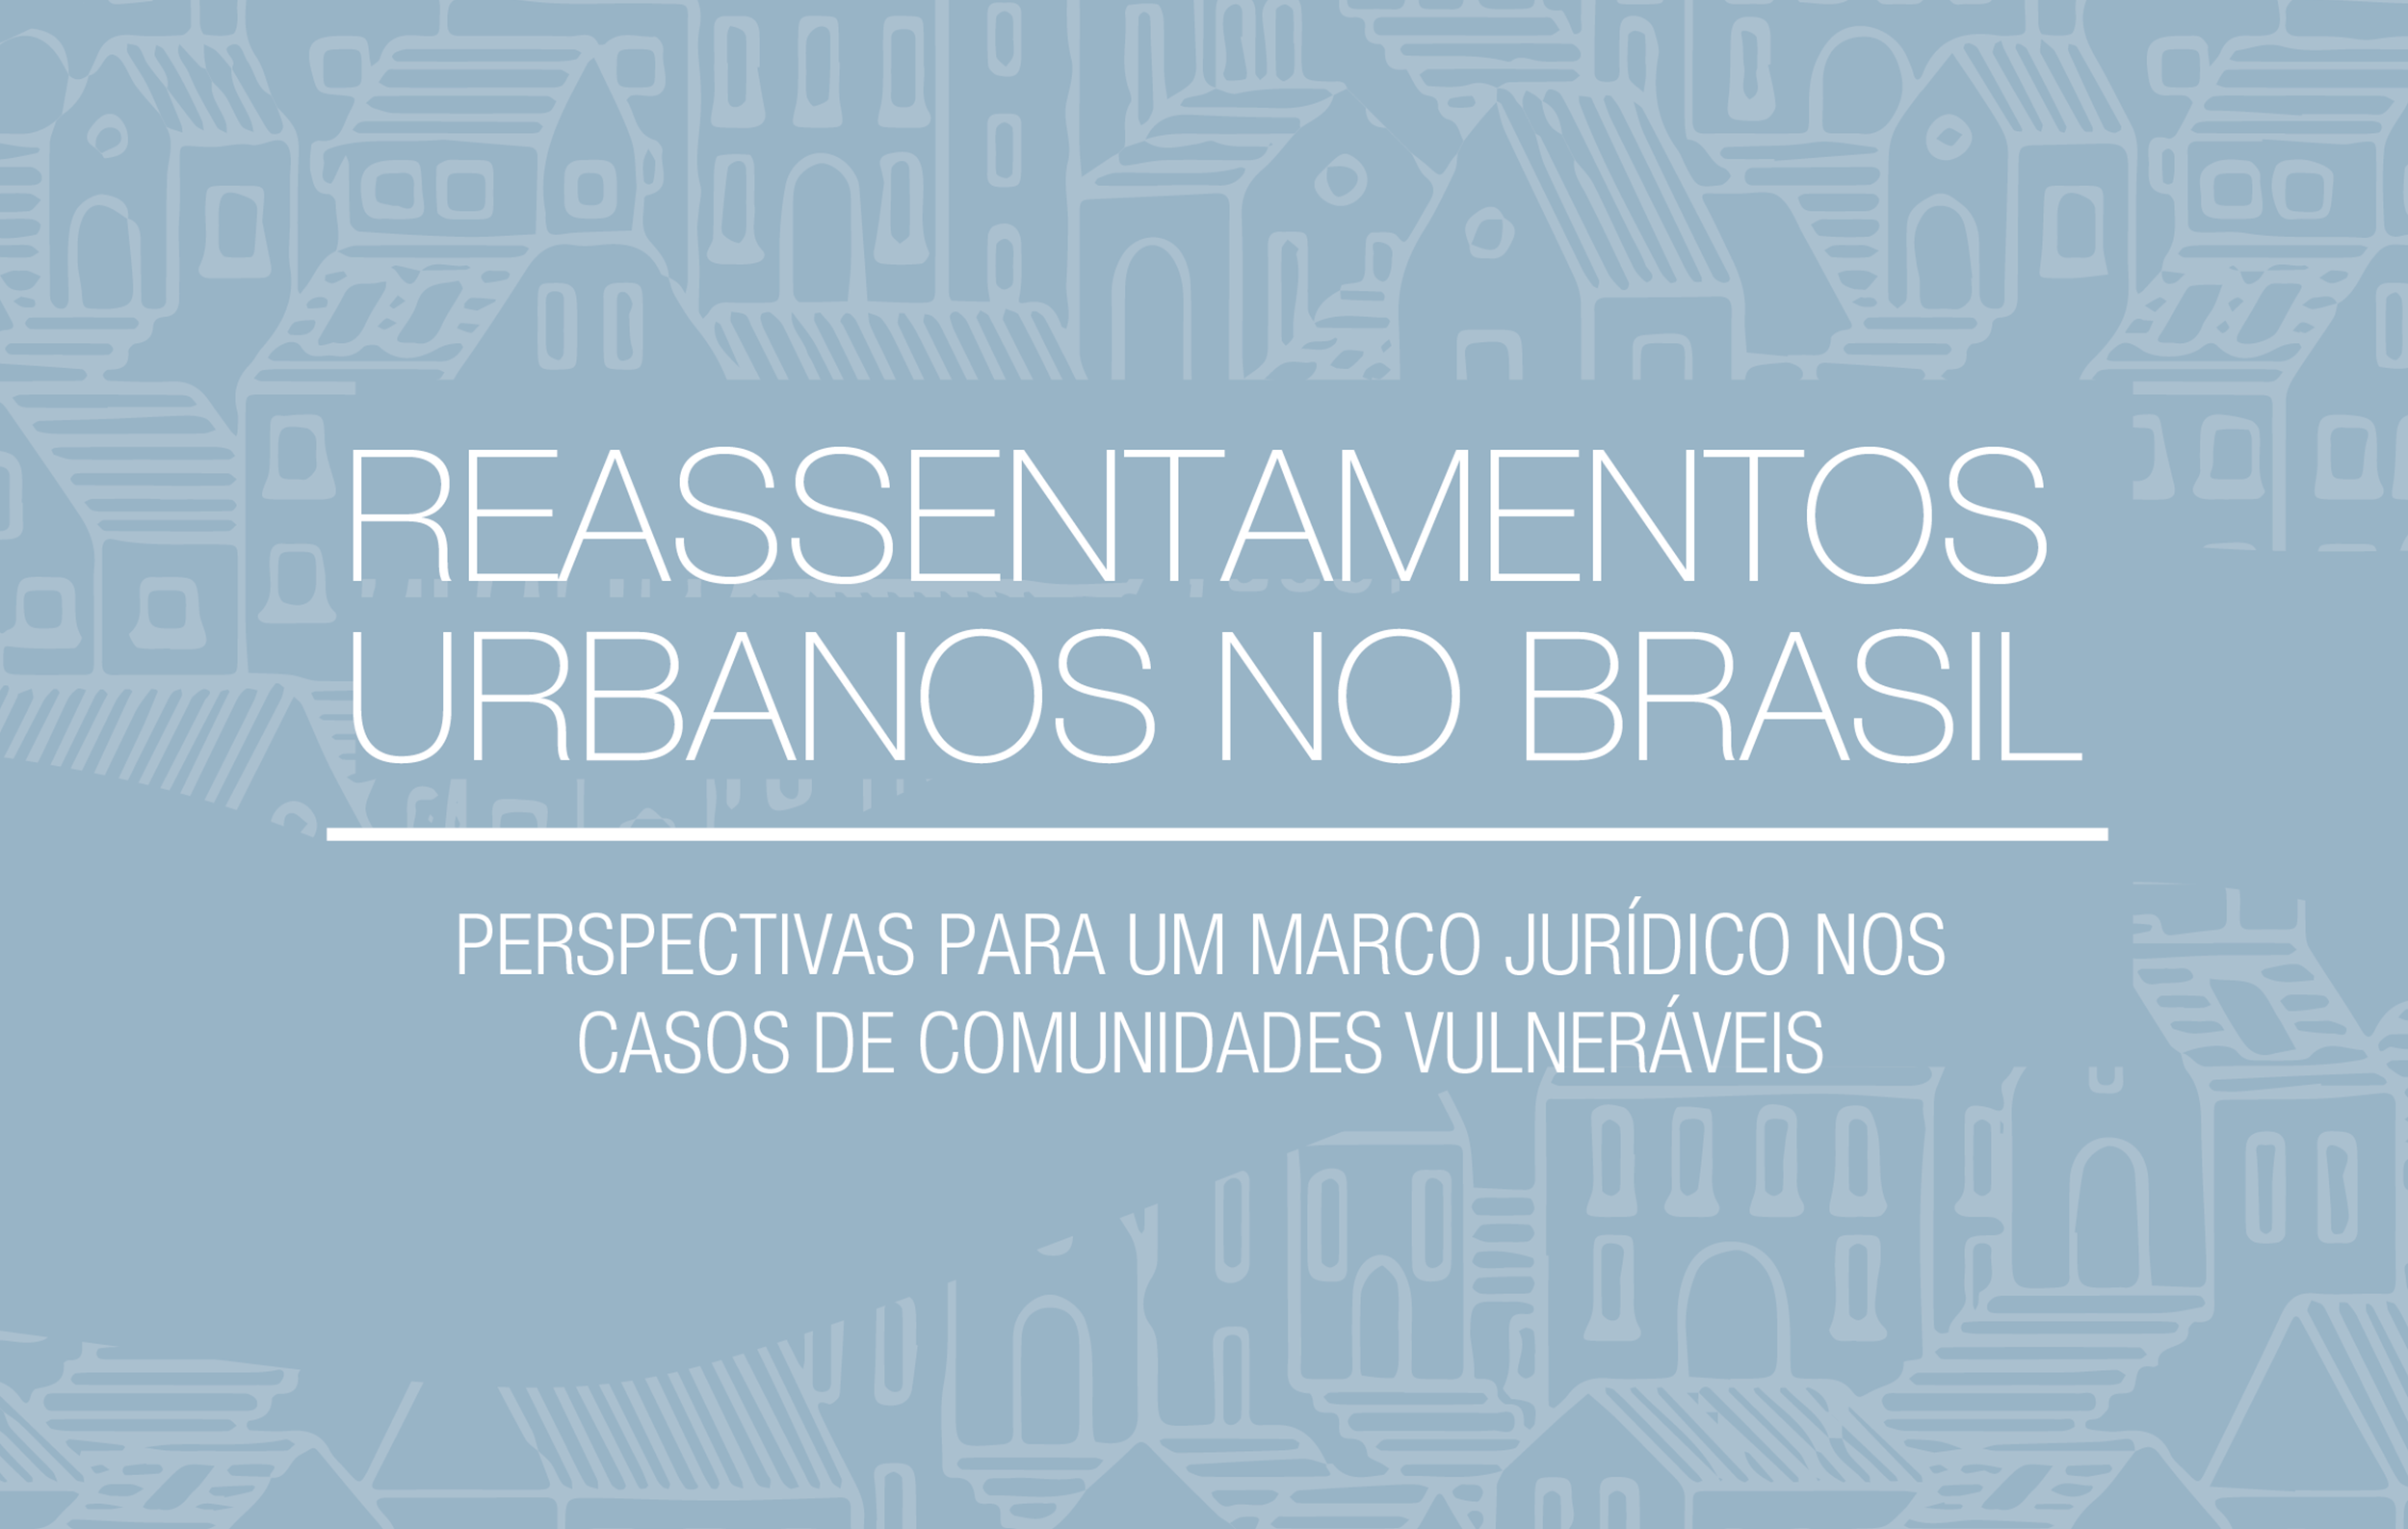 Lançamento do Livro Reassentamentos Urbanos no Brasil